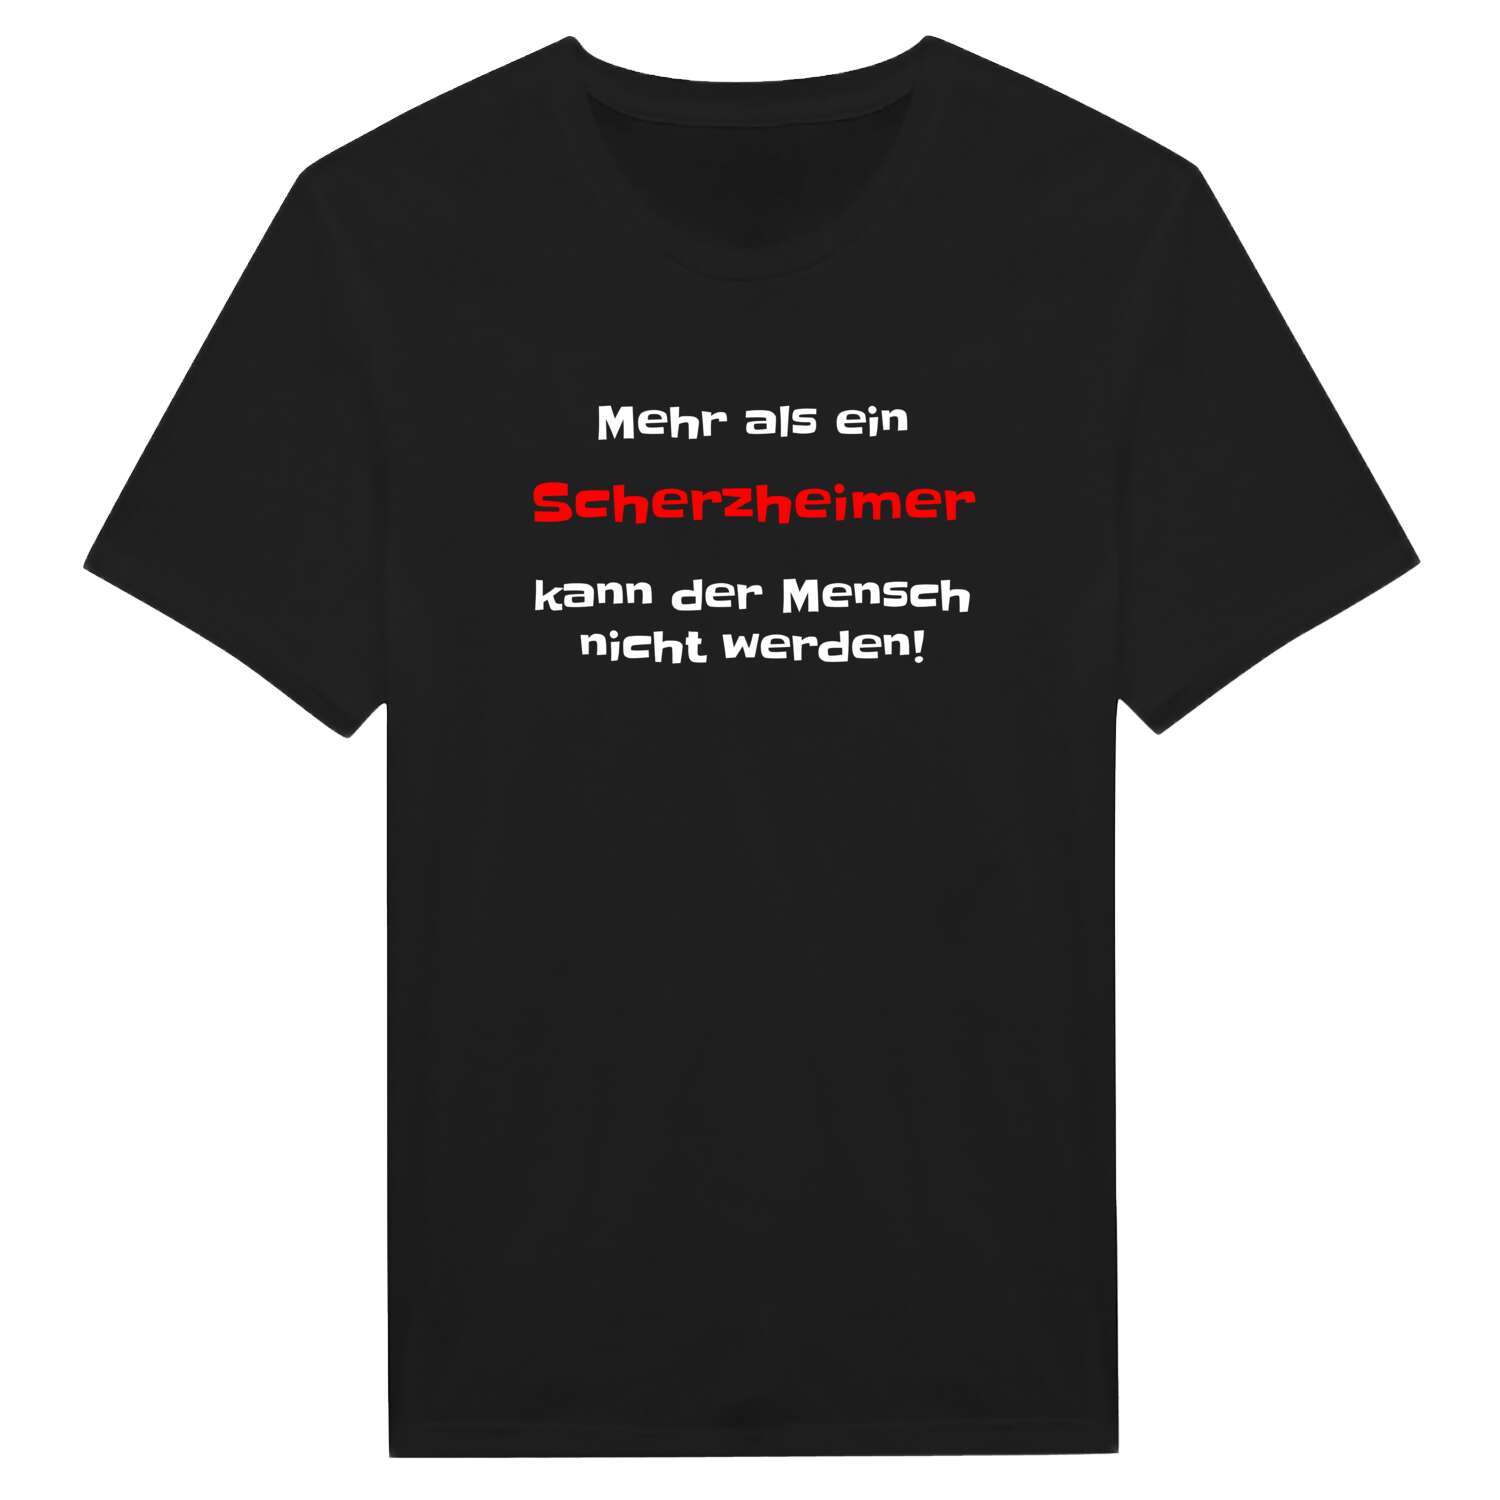 Scherzheim T-Shirt »Mehr als ein«